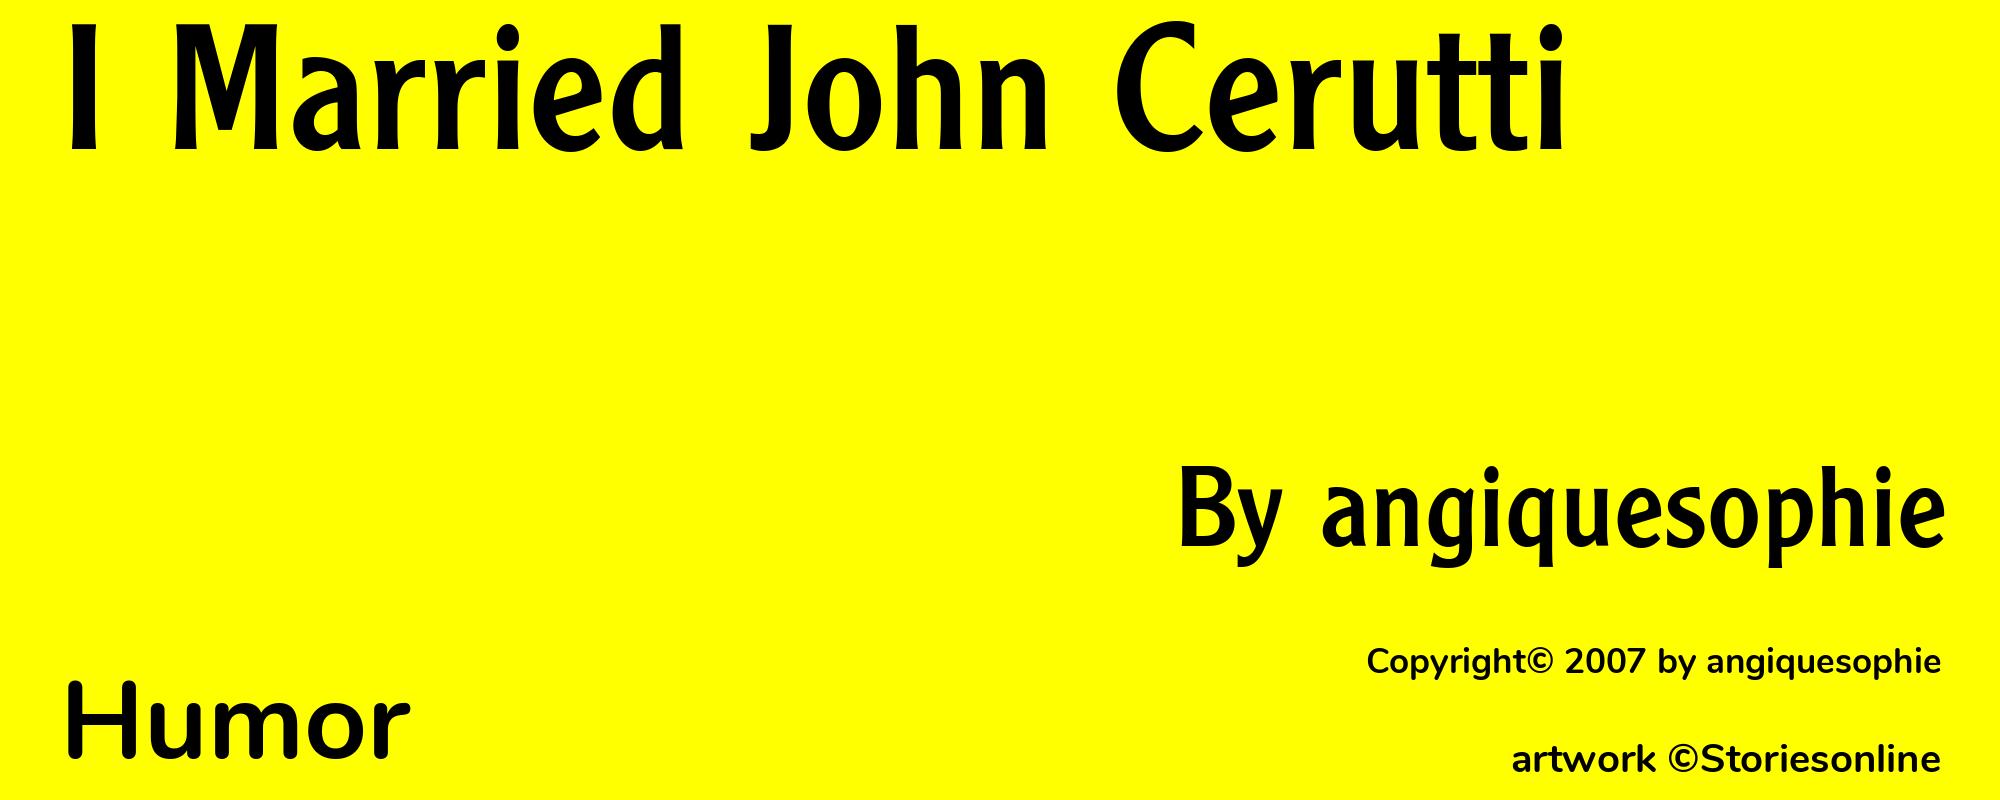 I Married John Cerutti - Cover